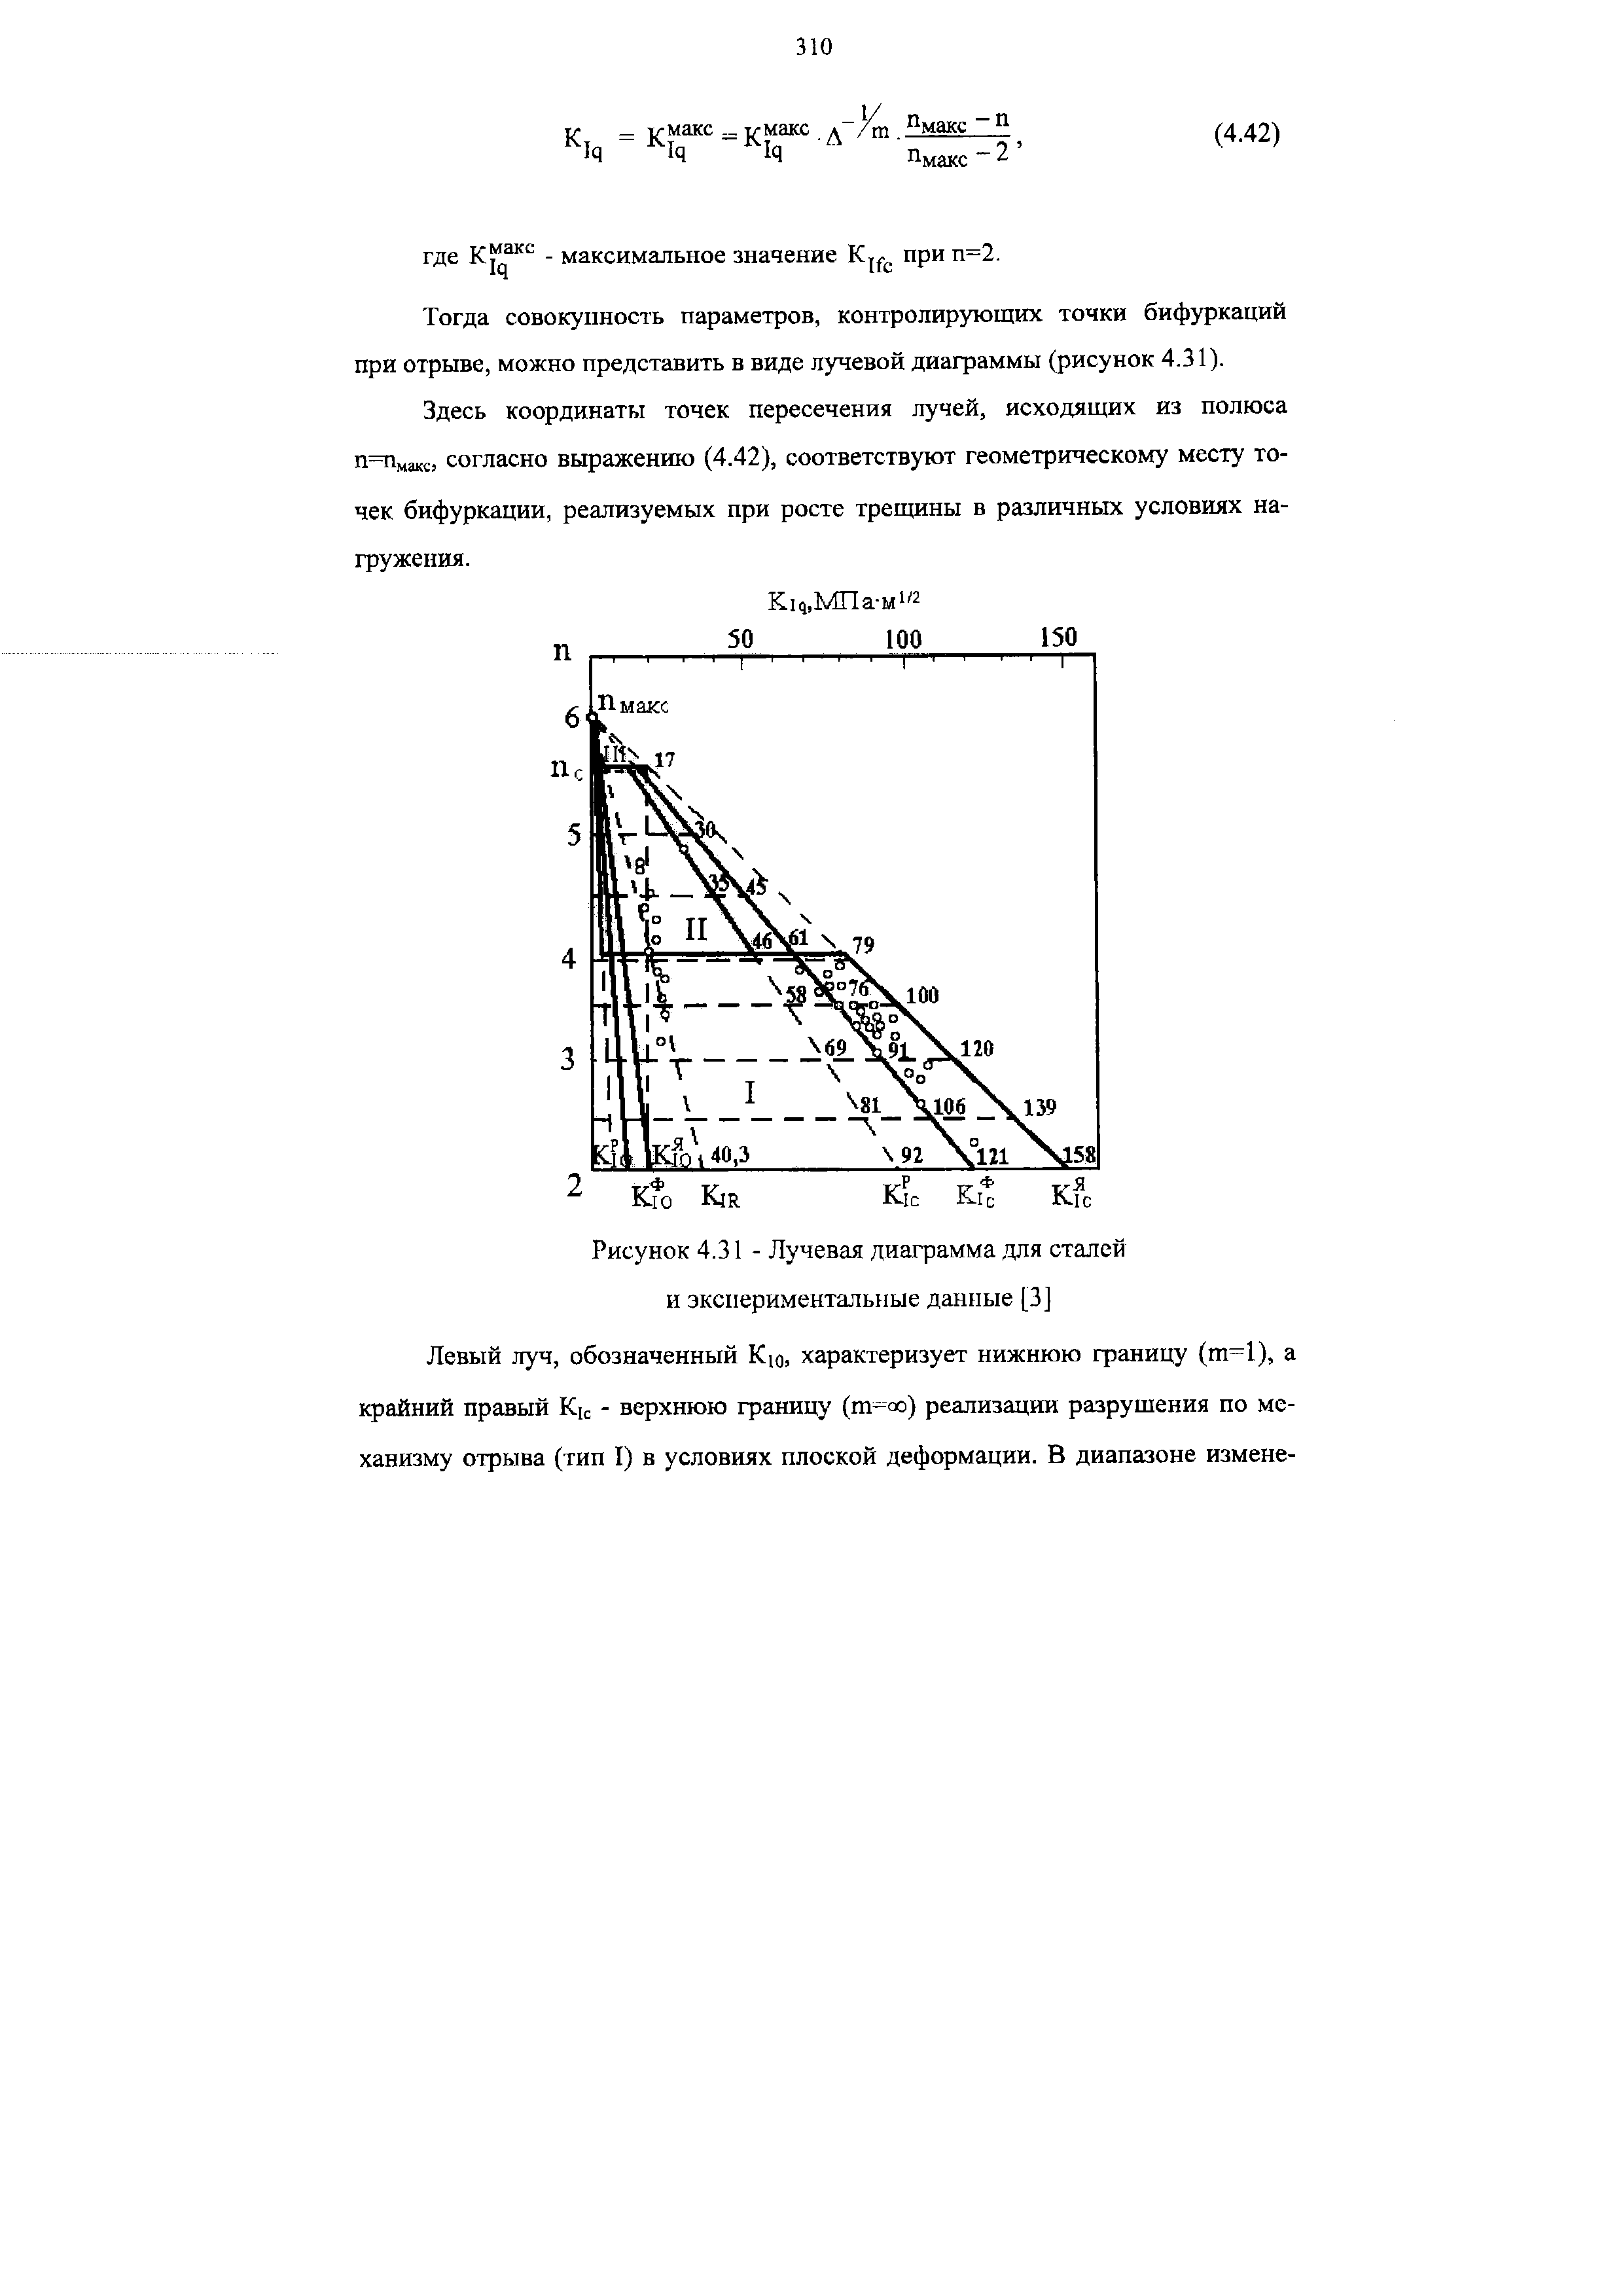 Рисунок 4.31 - Лучевая диаграмма для сталей и экспериментальные данные [3]
